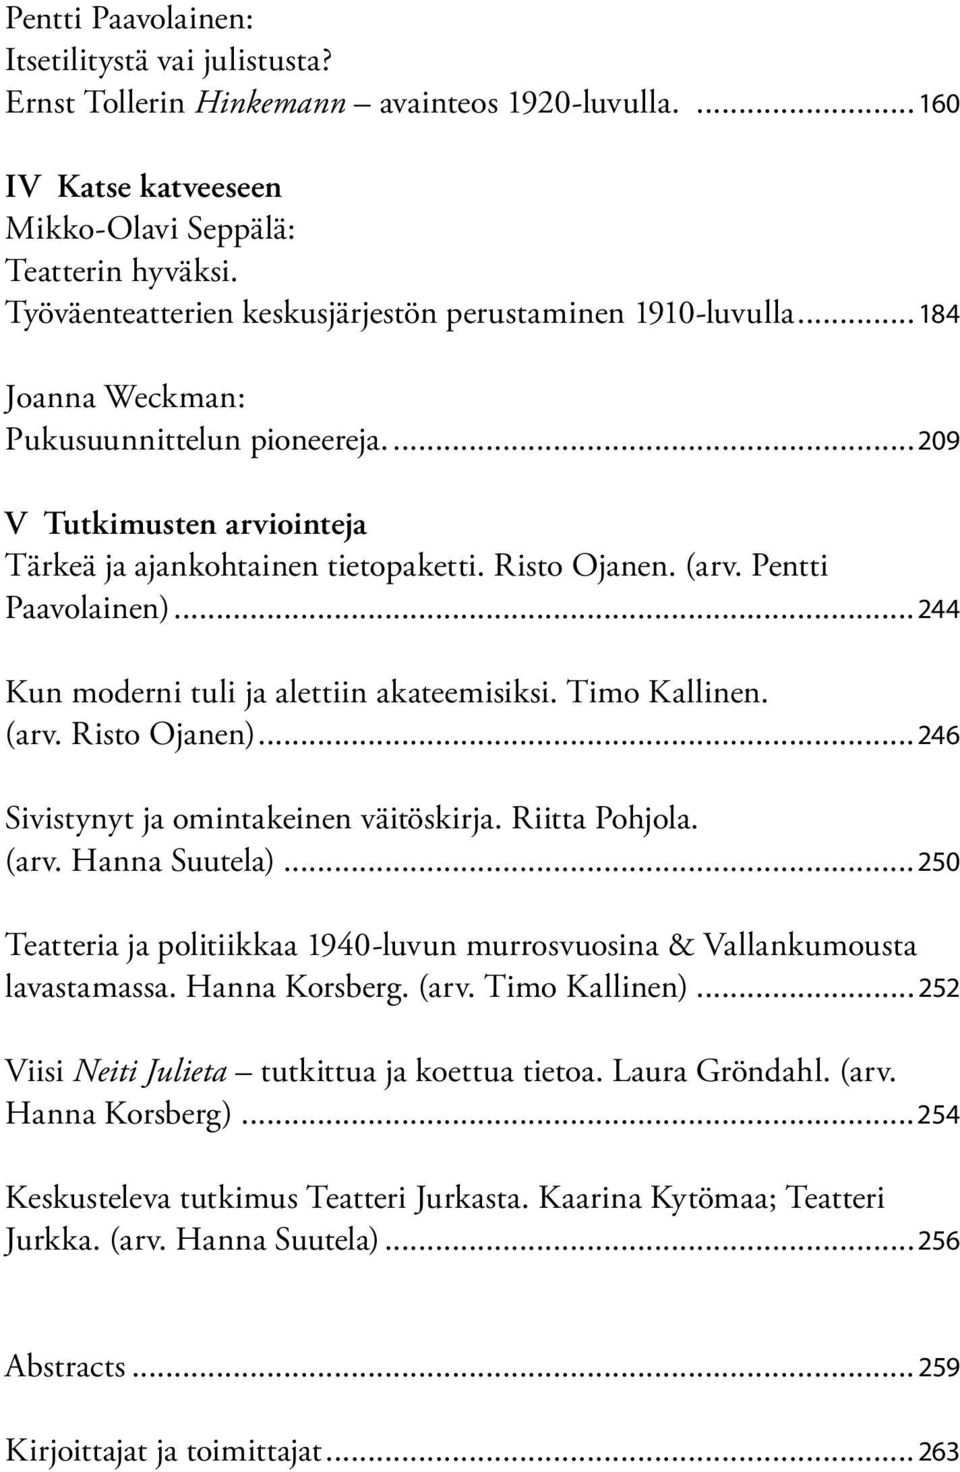 (arv. Pentti Paavolainen)...244 Kun moderni tuli ja alettiin akateemisiksi. Timo Kallinen. (arv. Risto Ojanen)...246 Sivistynyt ja omintakeinen väitöskirja. Riitta Pohjola. (arv. Hanna Suutela).